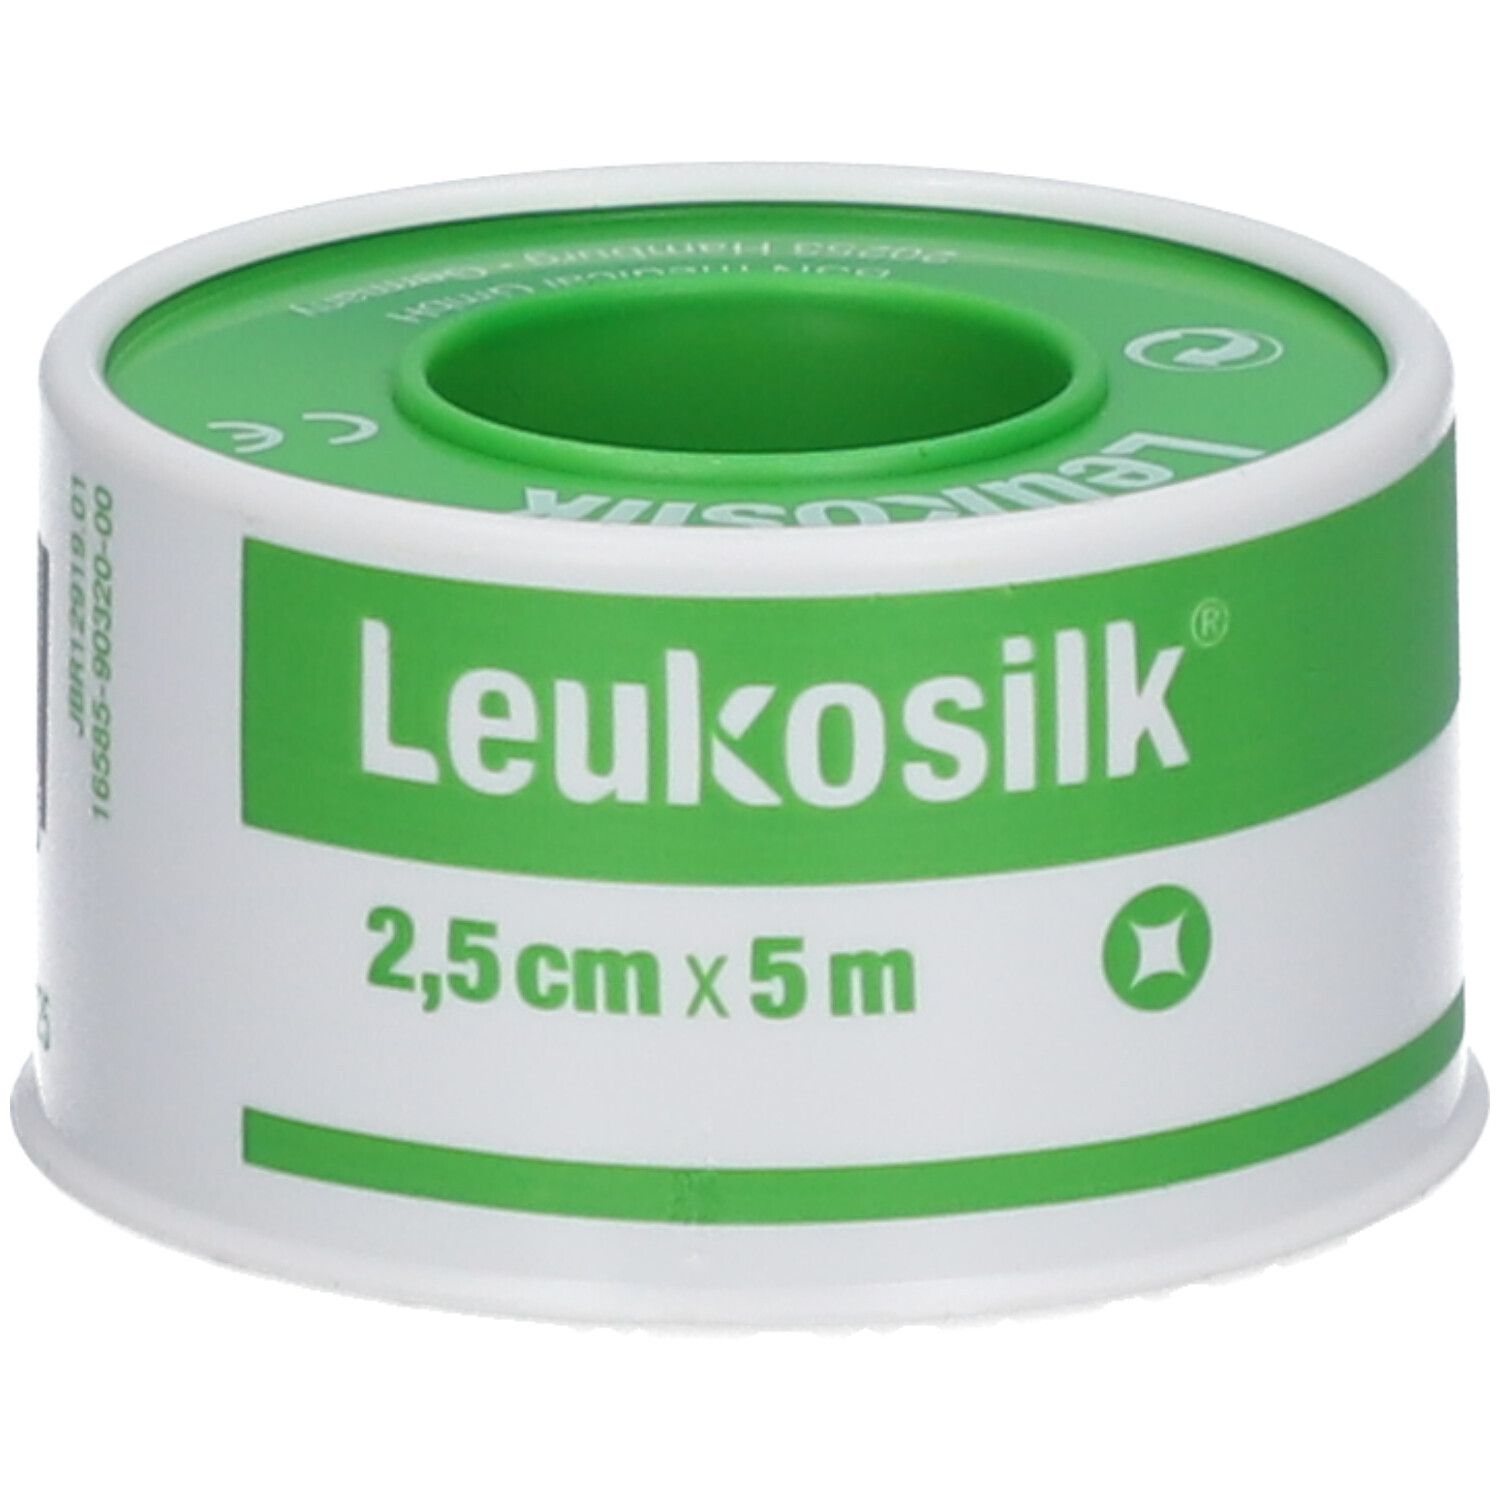 Leukosilk Sticking Plaster 2,5cm x 5m